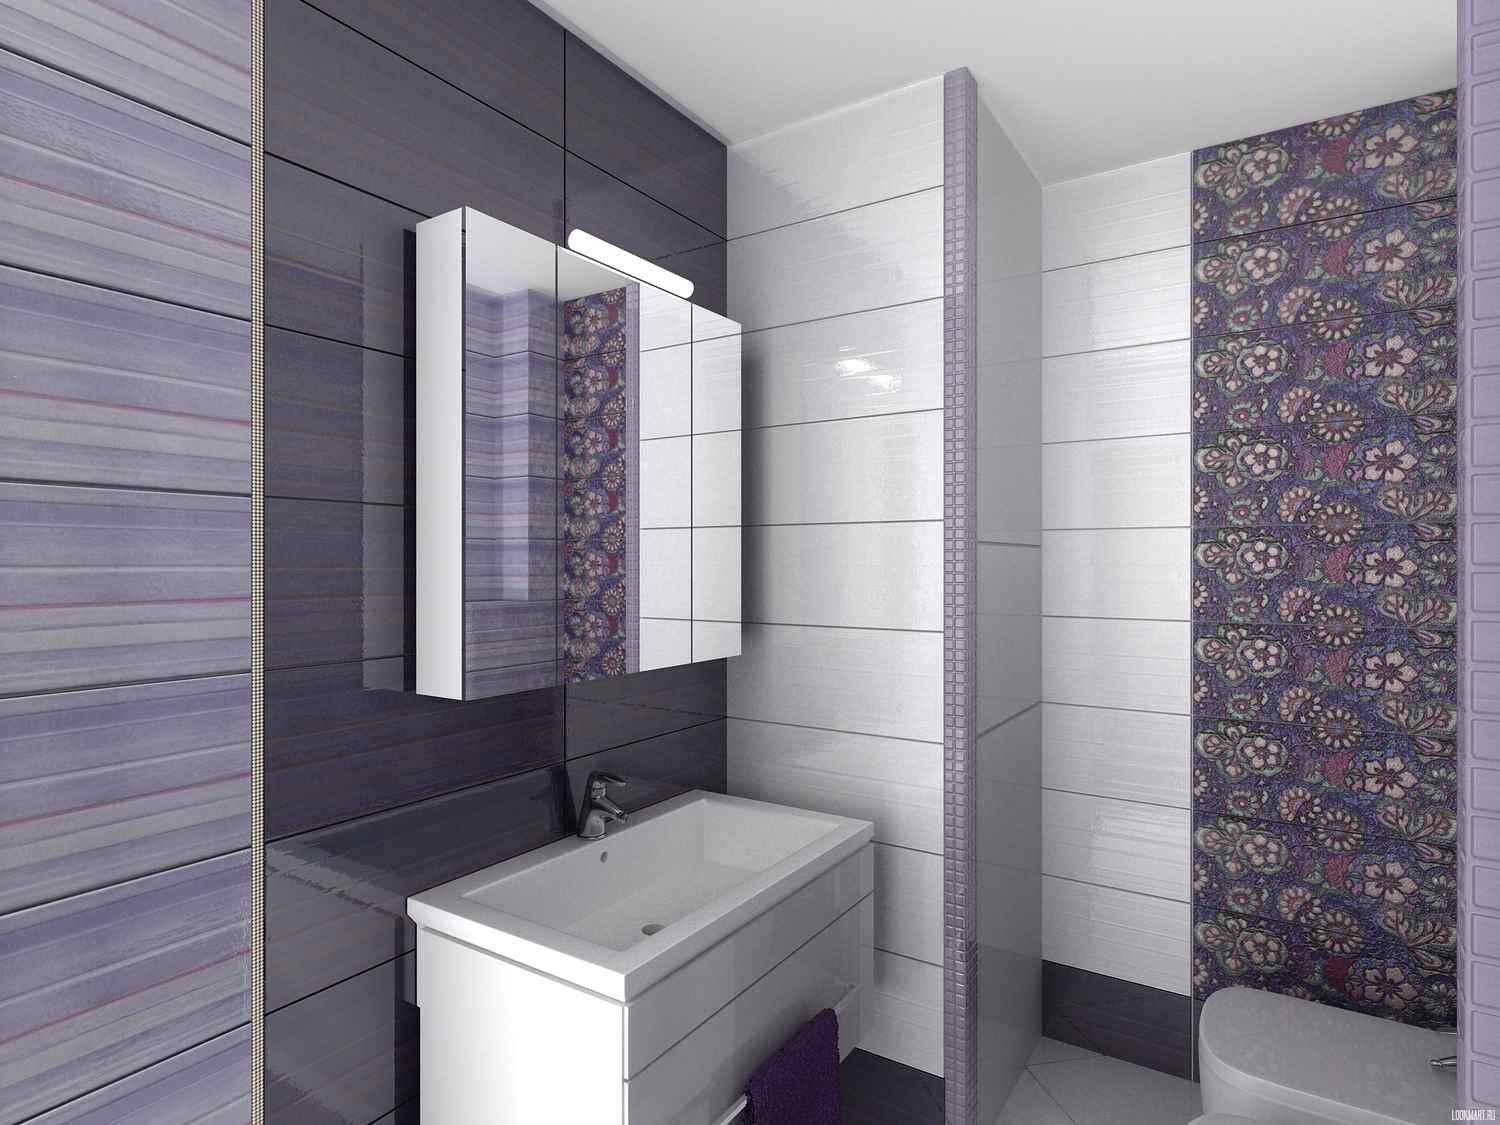 optie van ongebruikelijke interieur tegels in de badkamer